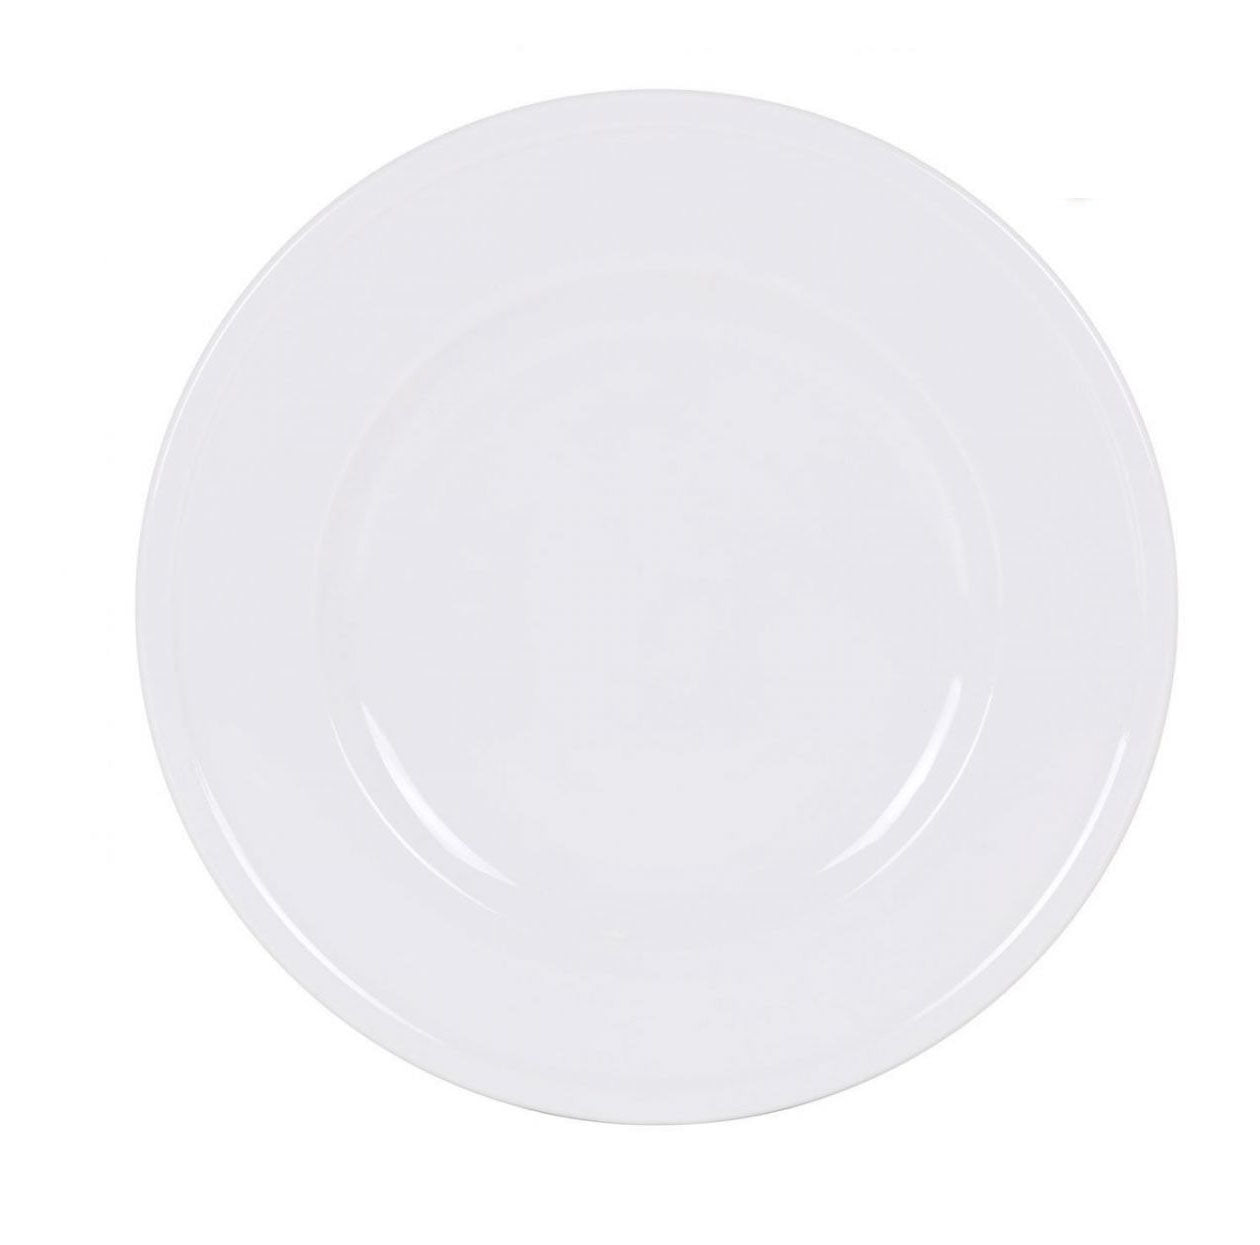 Olympia white porcelain Dinner plate 31cm